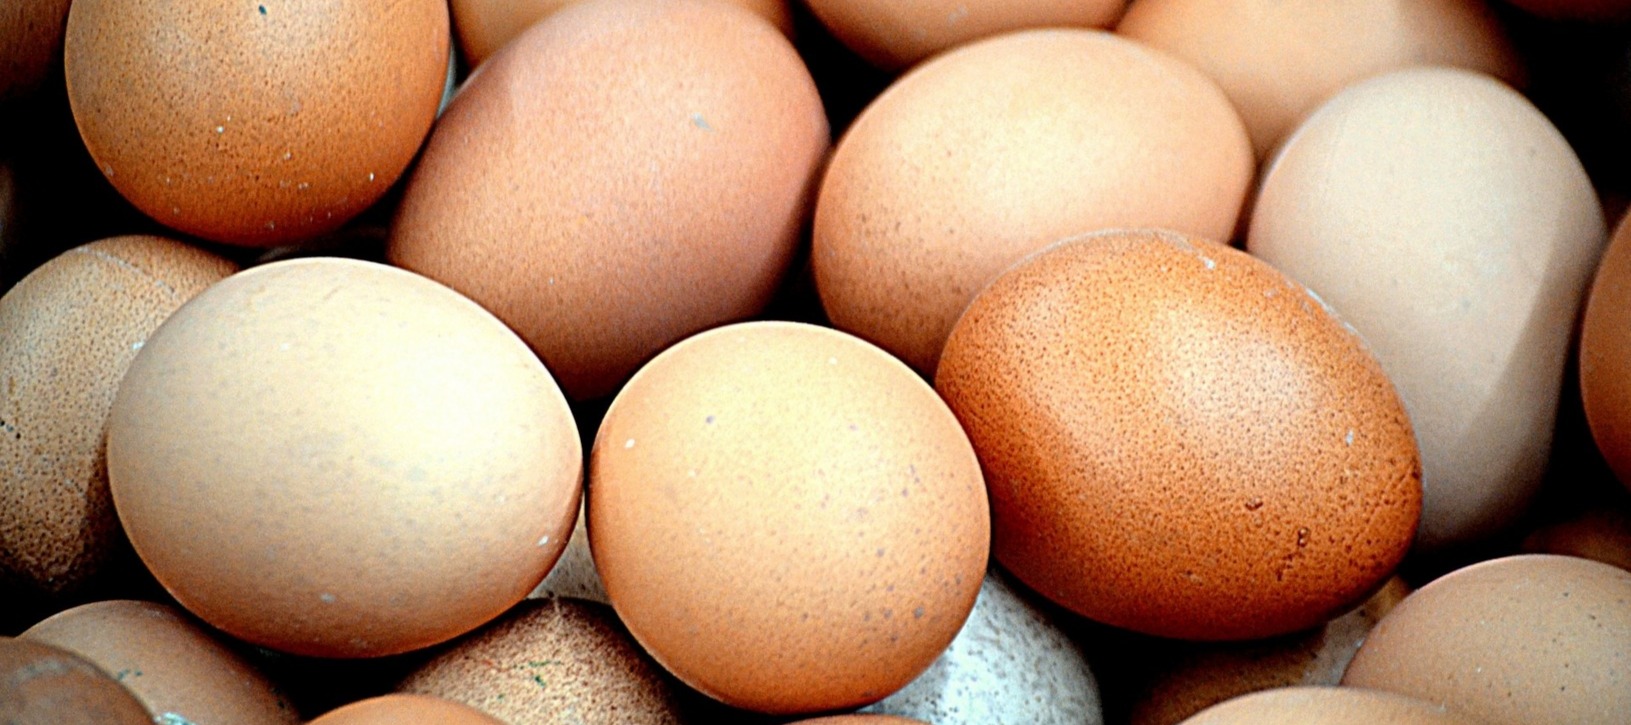 Фото новости: "Производство яиц в России упало в первом квартале"